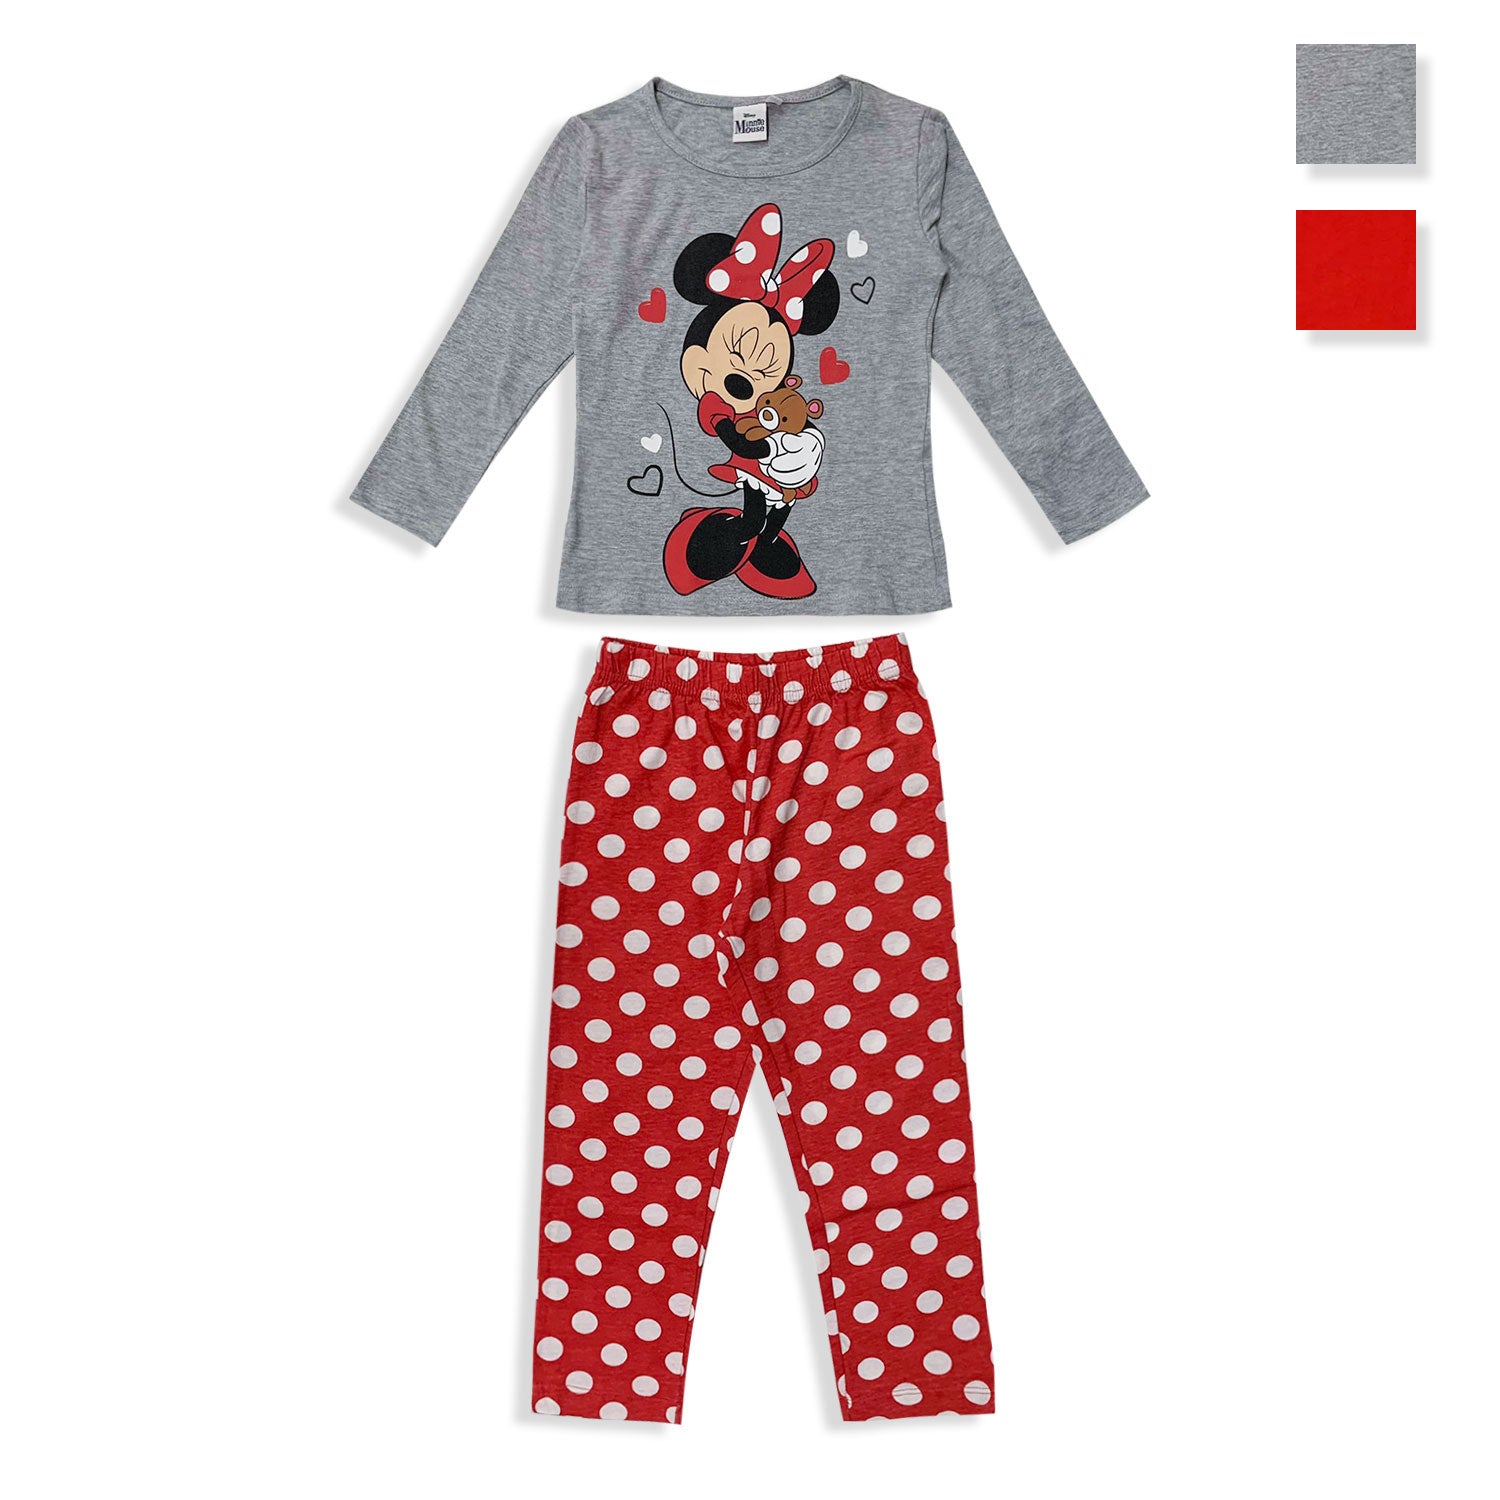 Pigiama Disney Minnie Mouse lungo bimba ufficiale in cotone bambina 5569